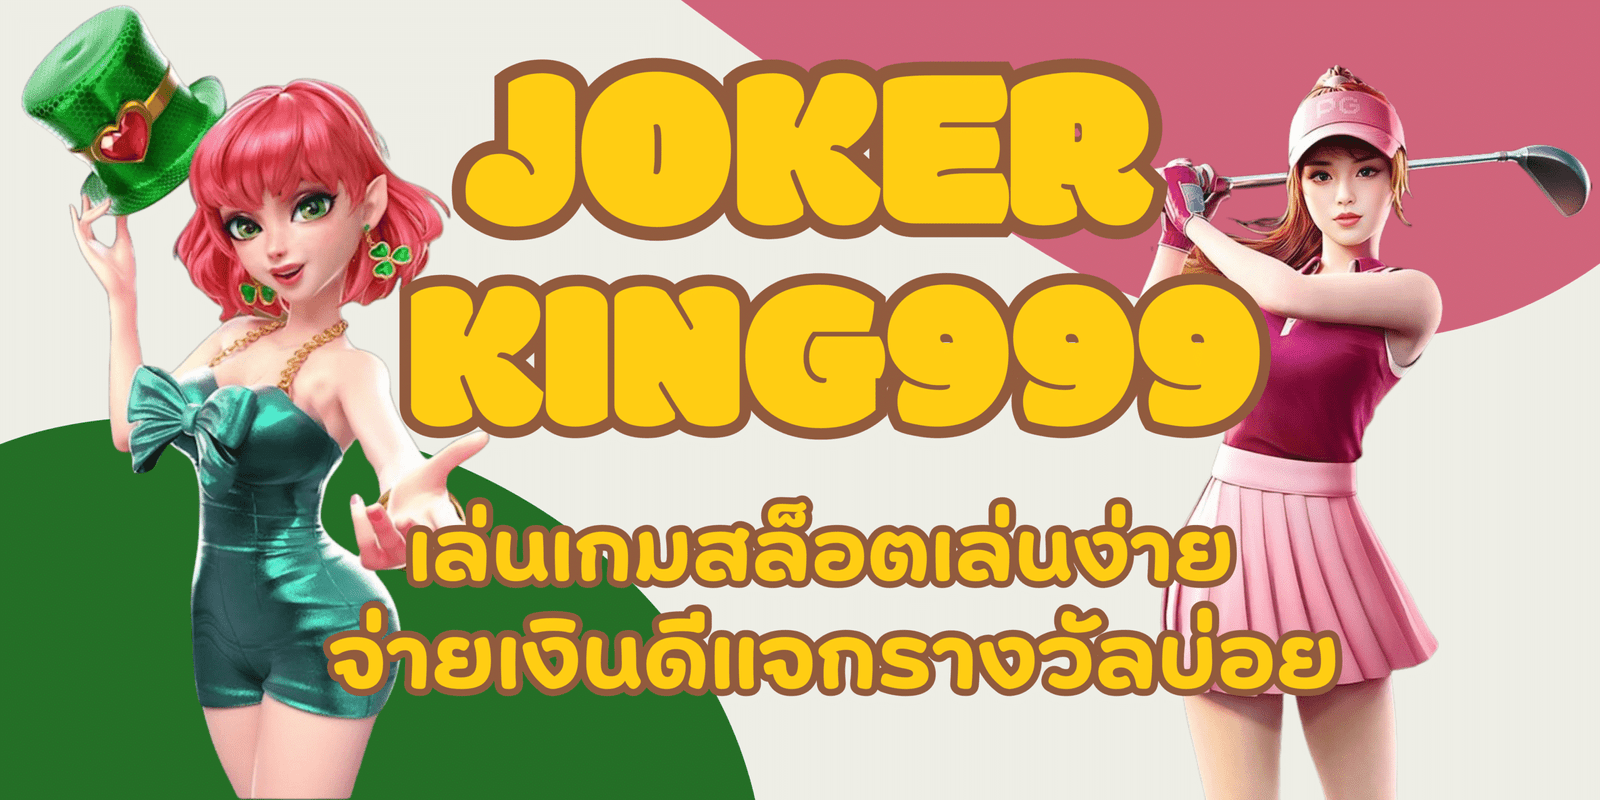 joker-king999-แจกรางวัลบ่อย